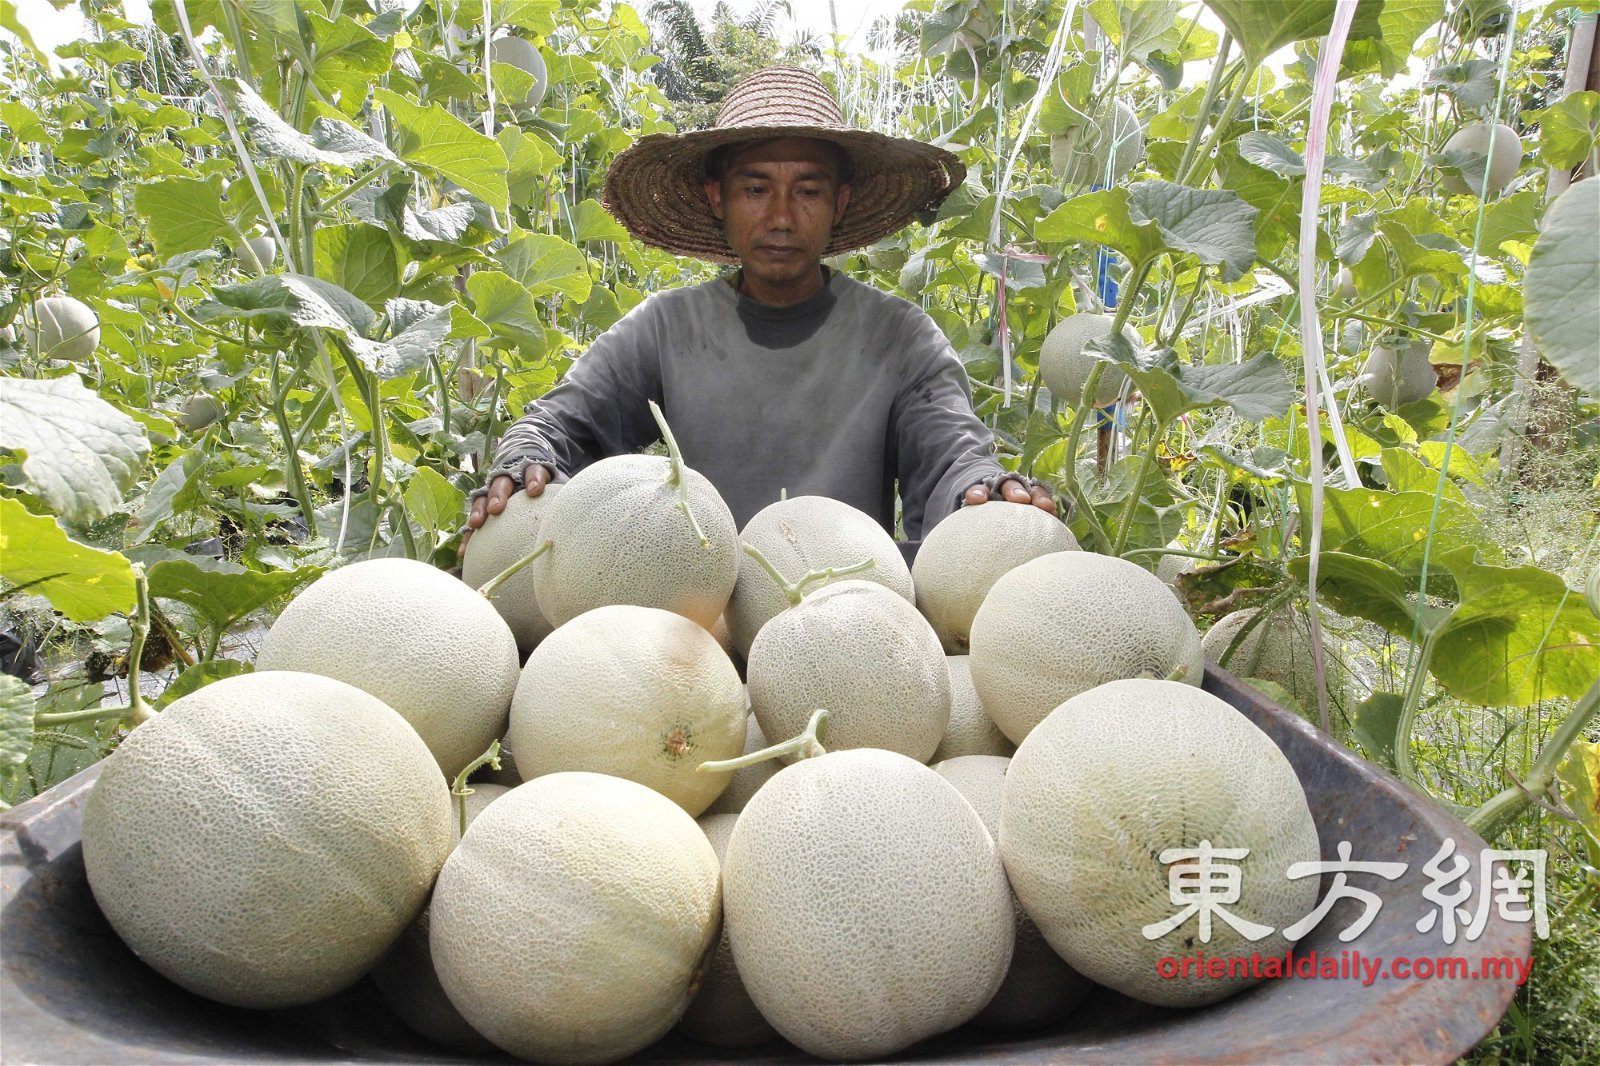 在热带国家栽种的网纹蜜瓜品种只需75天左右就可收成。